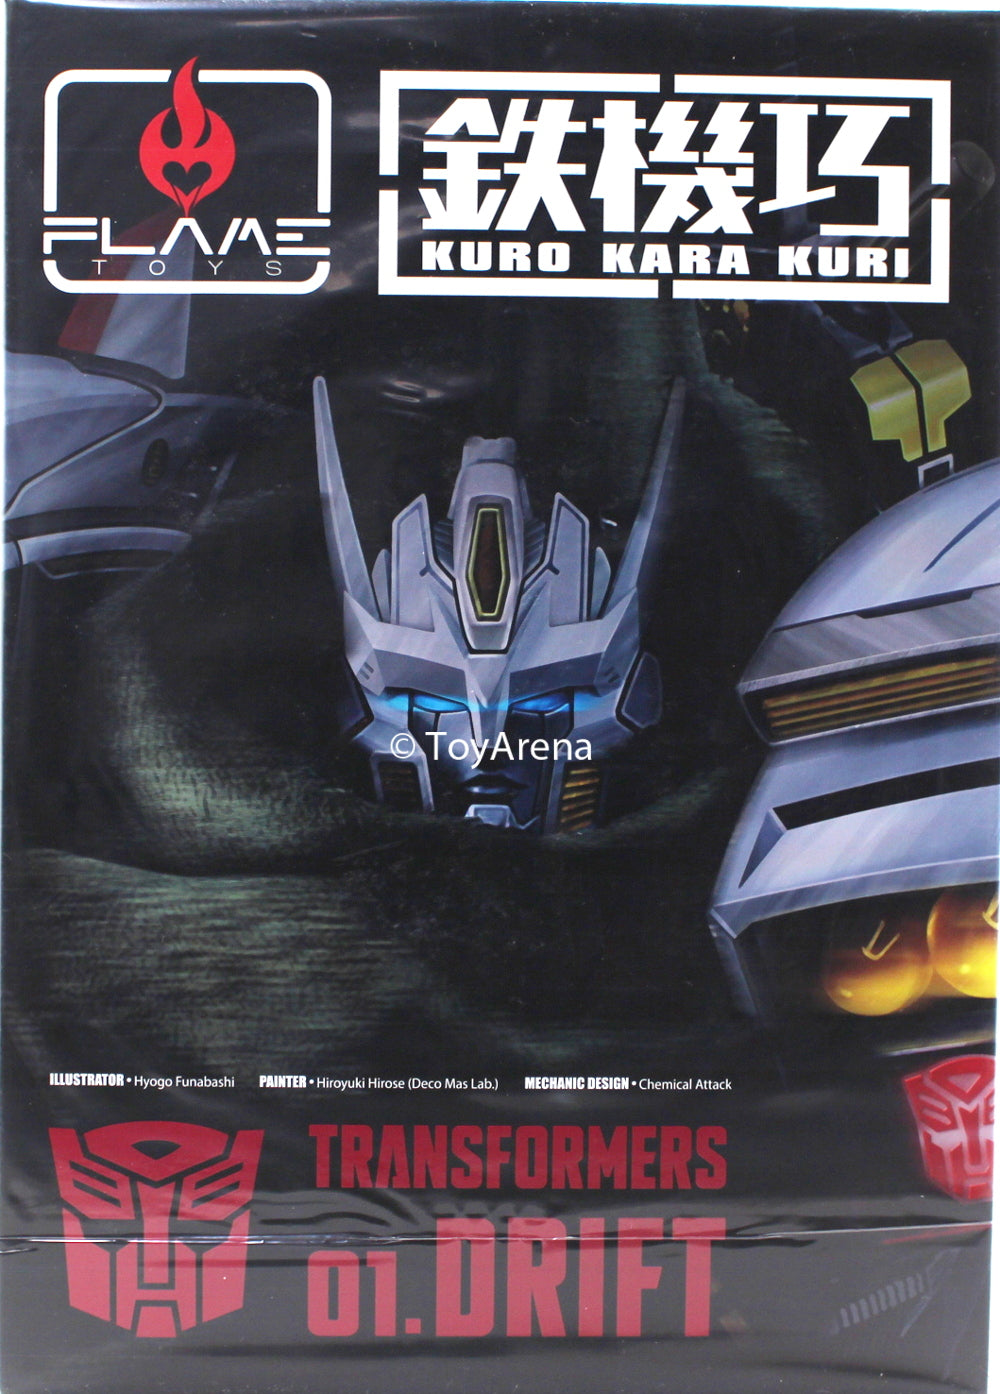 Flame Toys Transformers Kuro Kara Kuri #01 Drift Figure